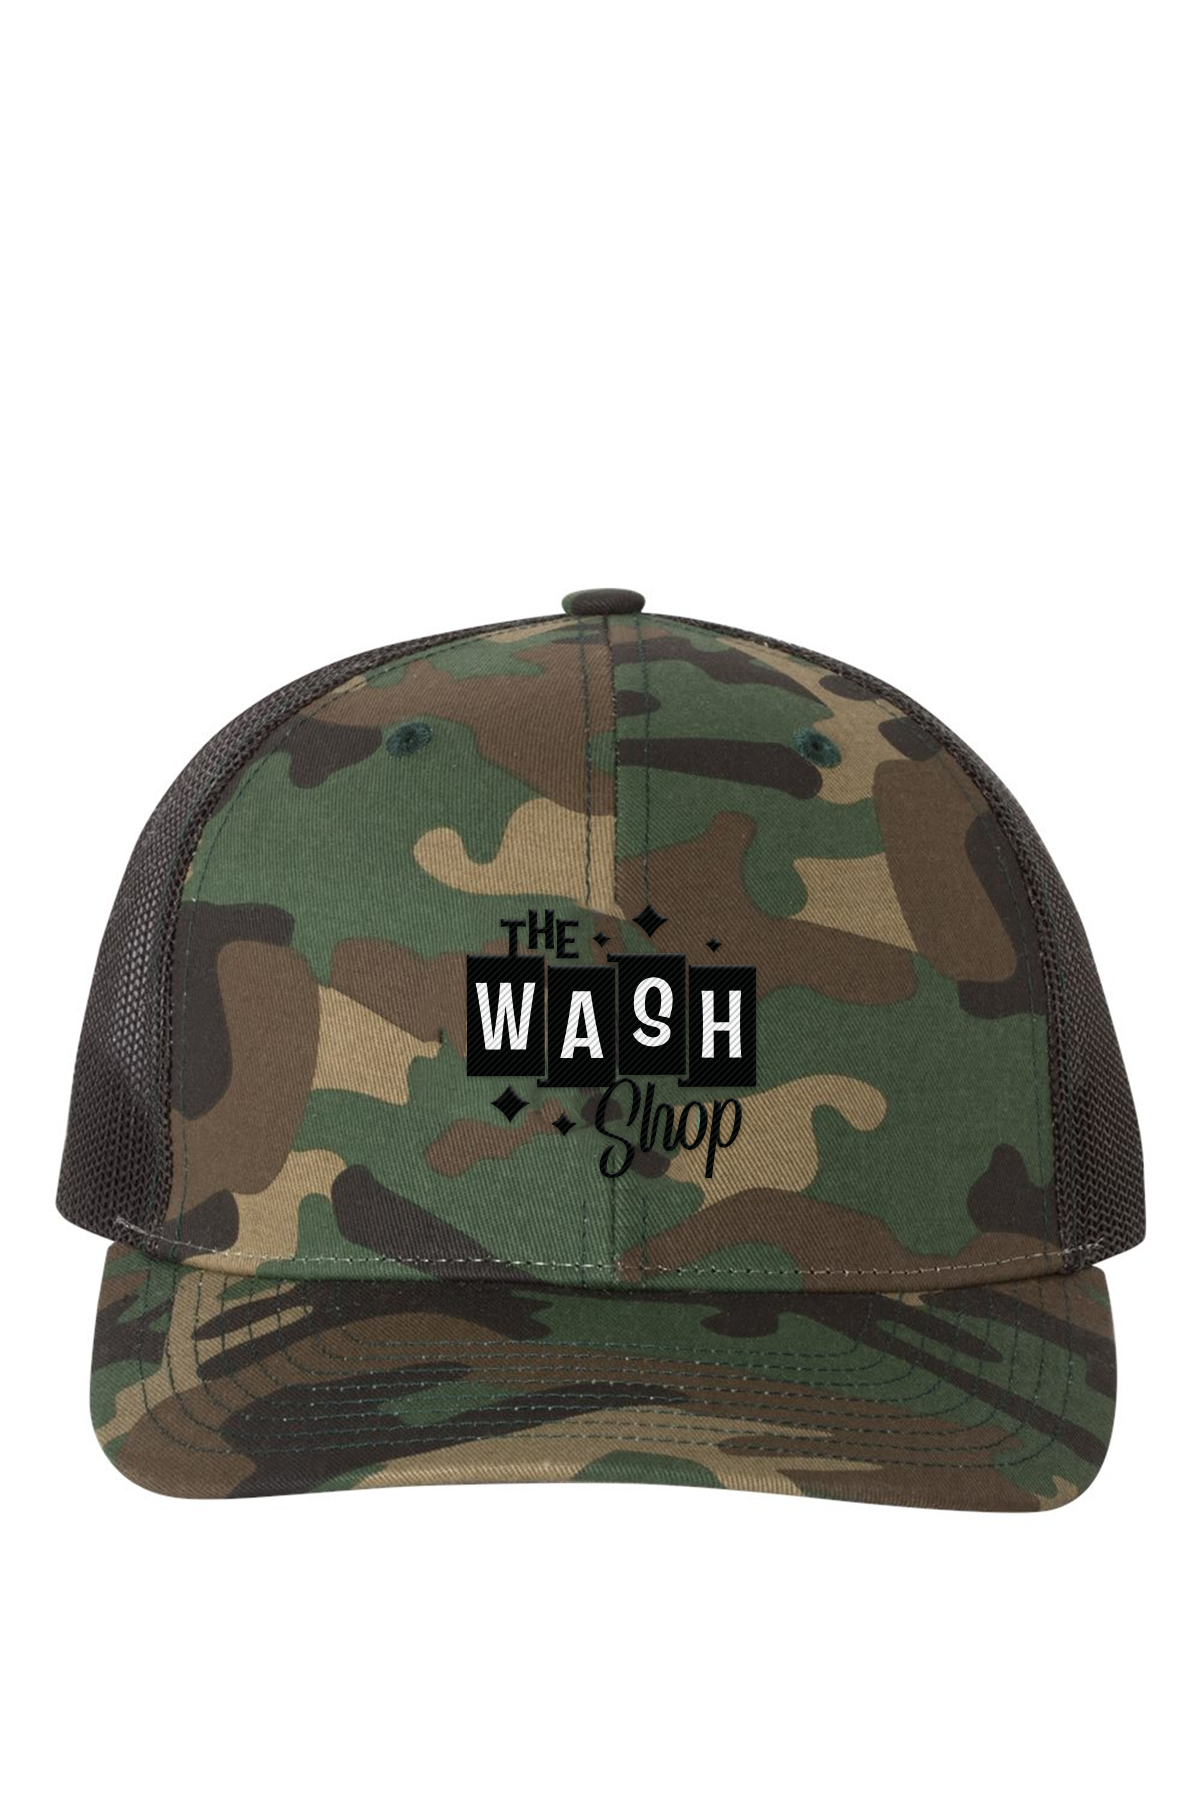 Snapback Trucker Cap - The Wash Shop